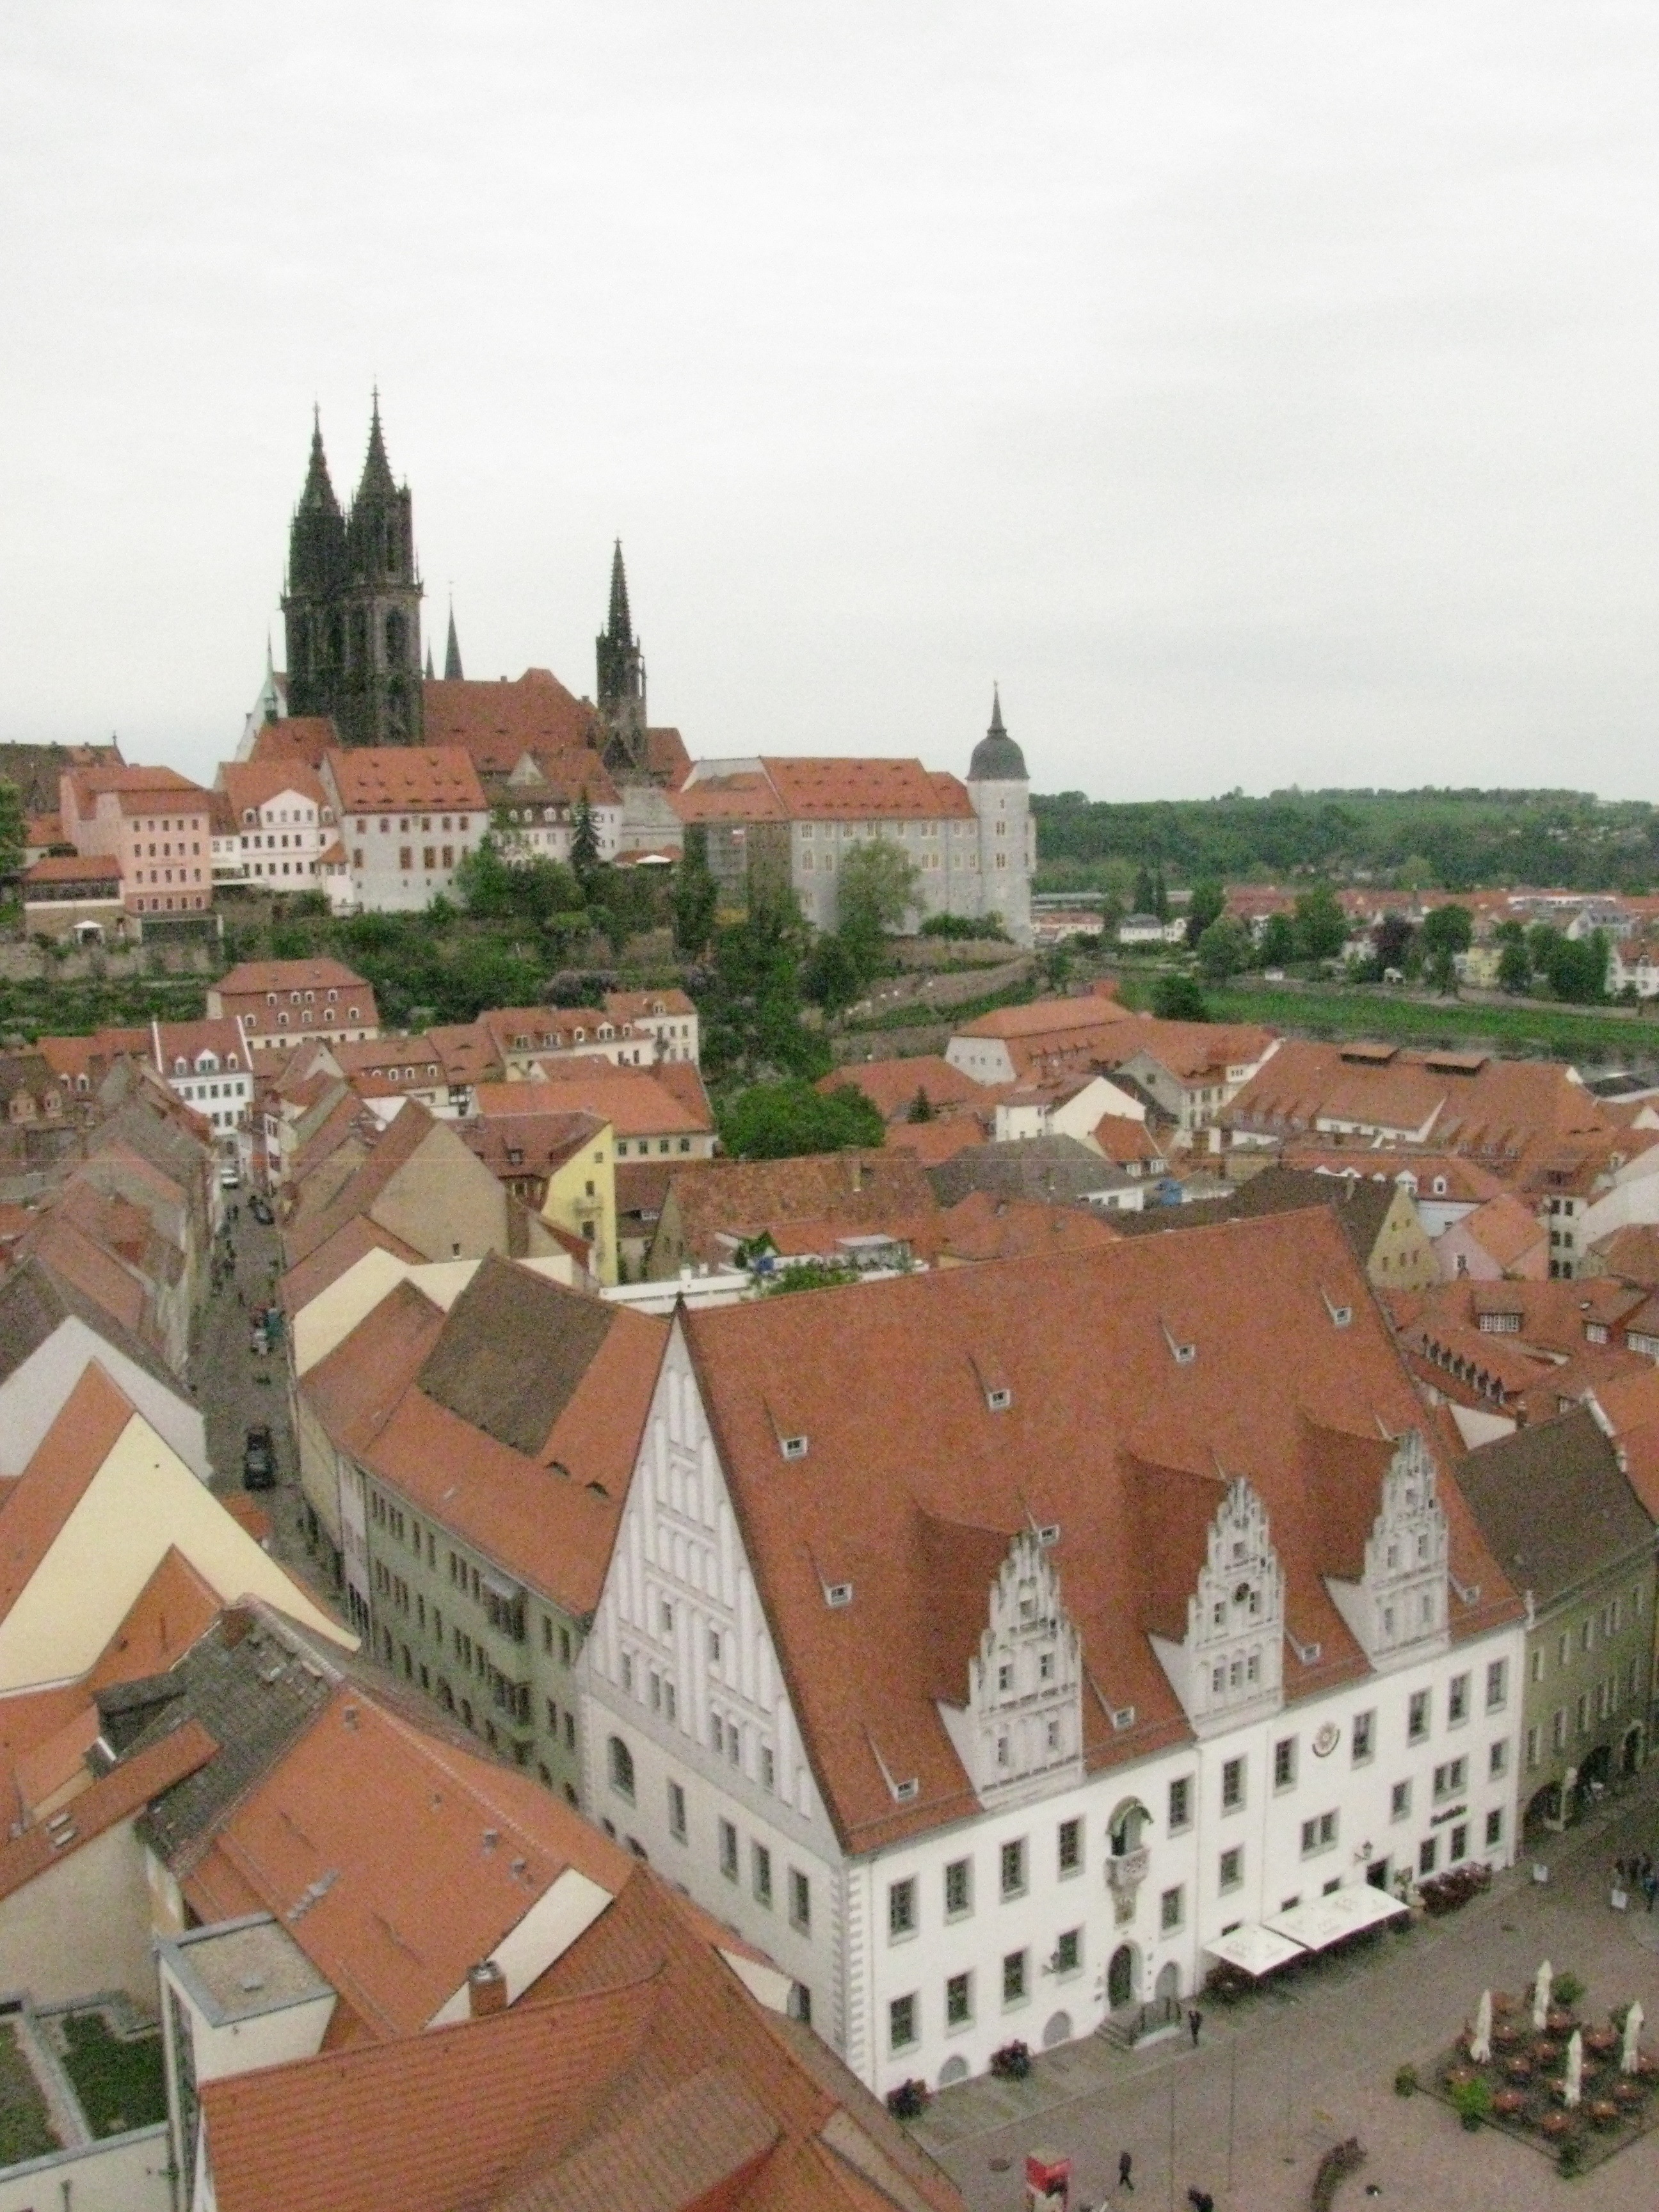 Aussicht auf Rathaus, Dom und Albrechtsburg von dort.:)